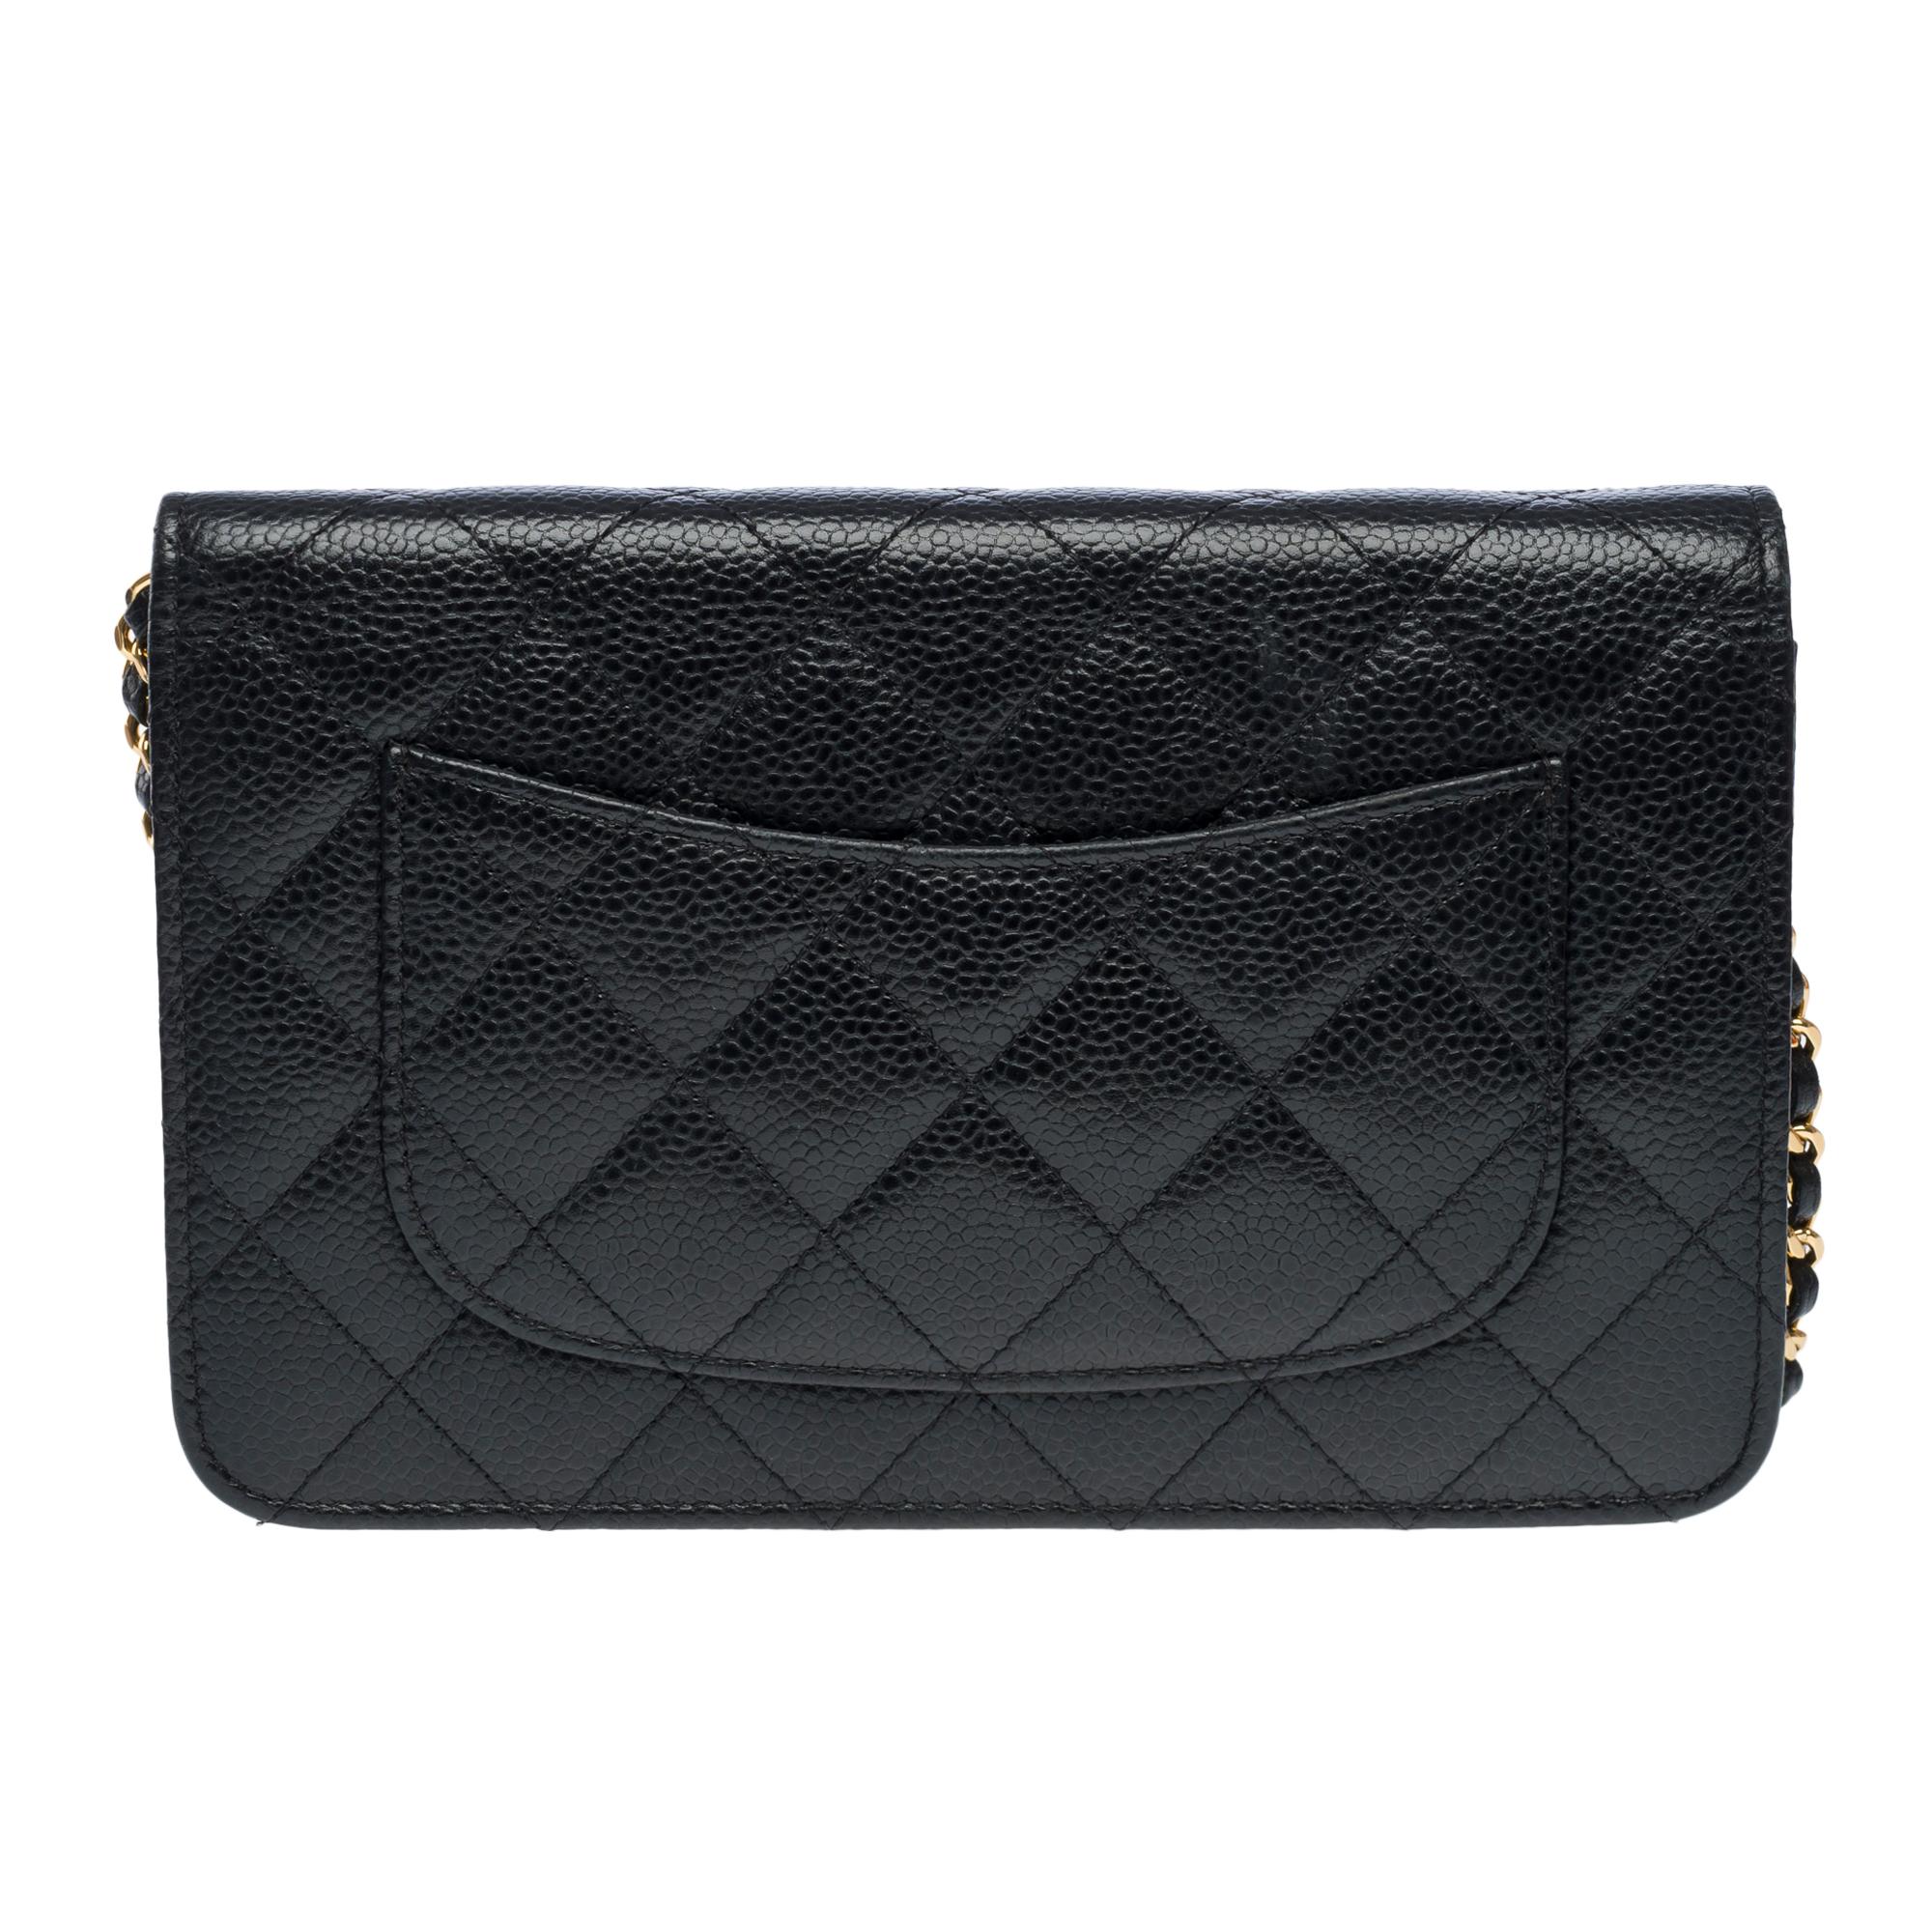 Portefeuille Chanel sur chaîne (WOC)  sac à bandoulière en cuir Caviar matelassé noir, GHW Pour femmes en vente